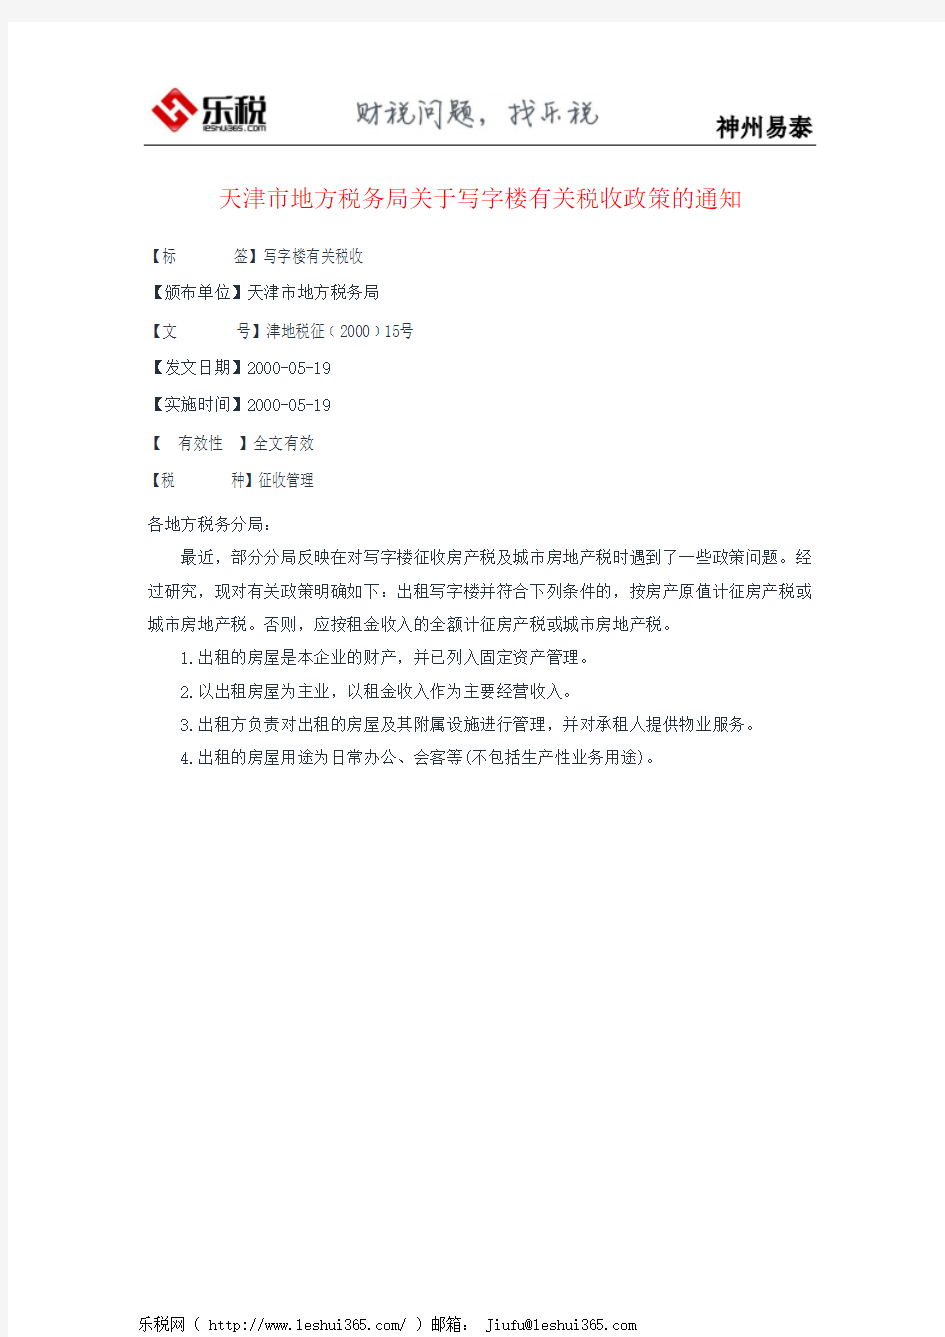 天津市地方税务局关于写字楼有关税收政策的通知